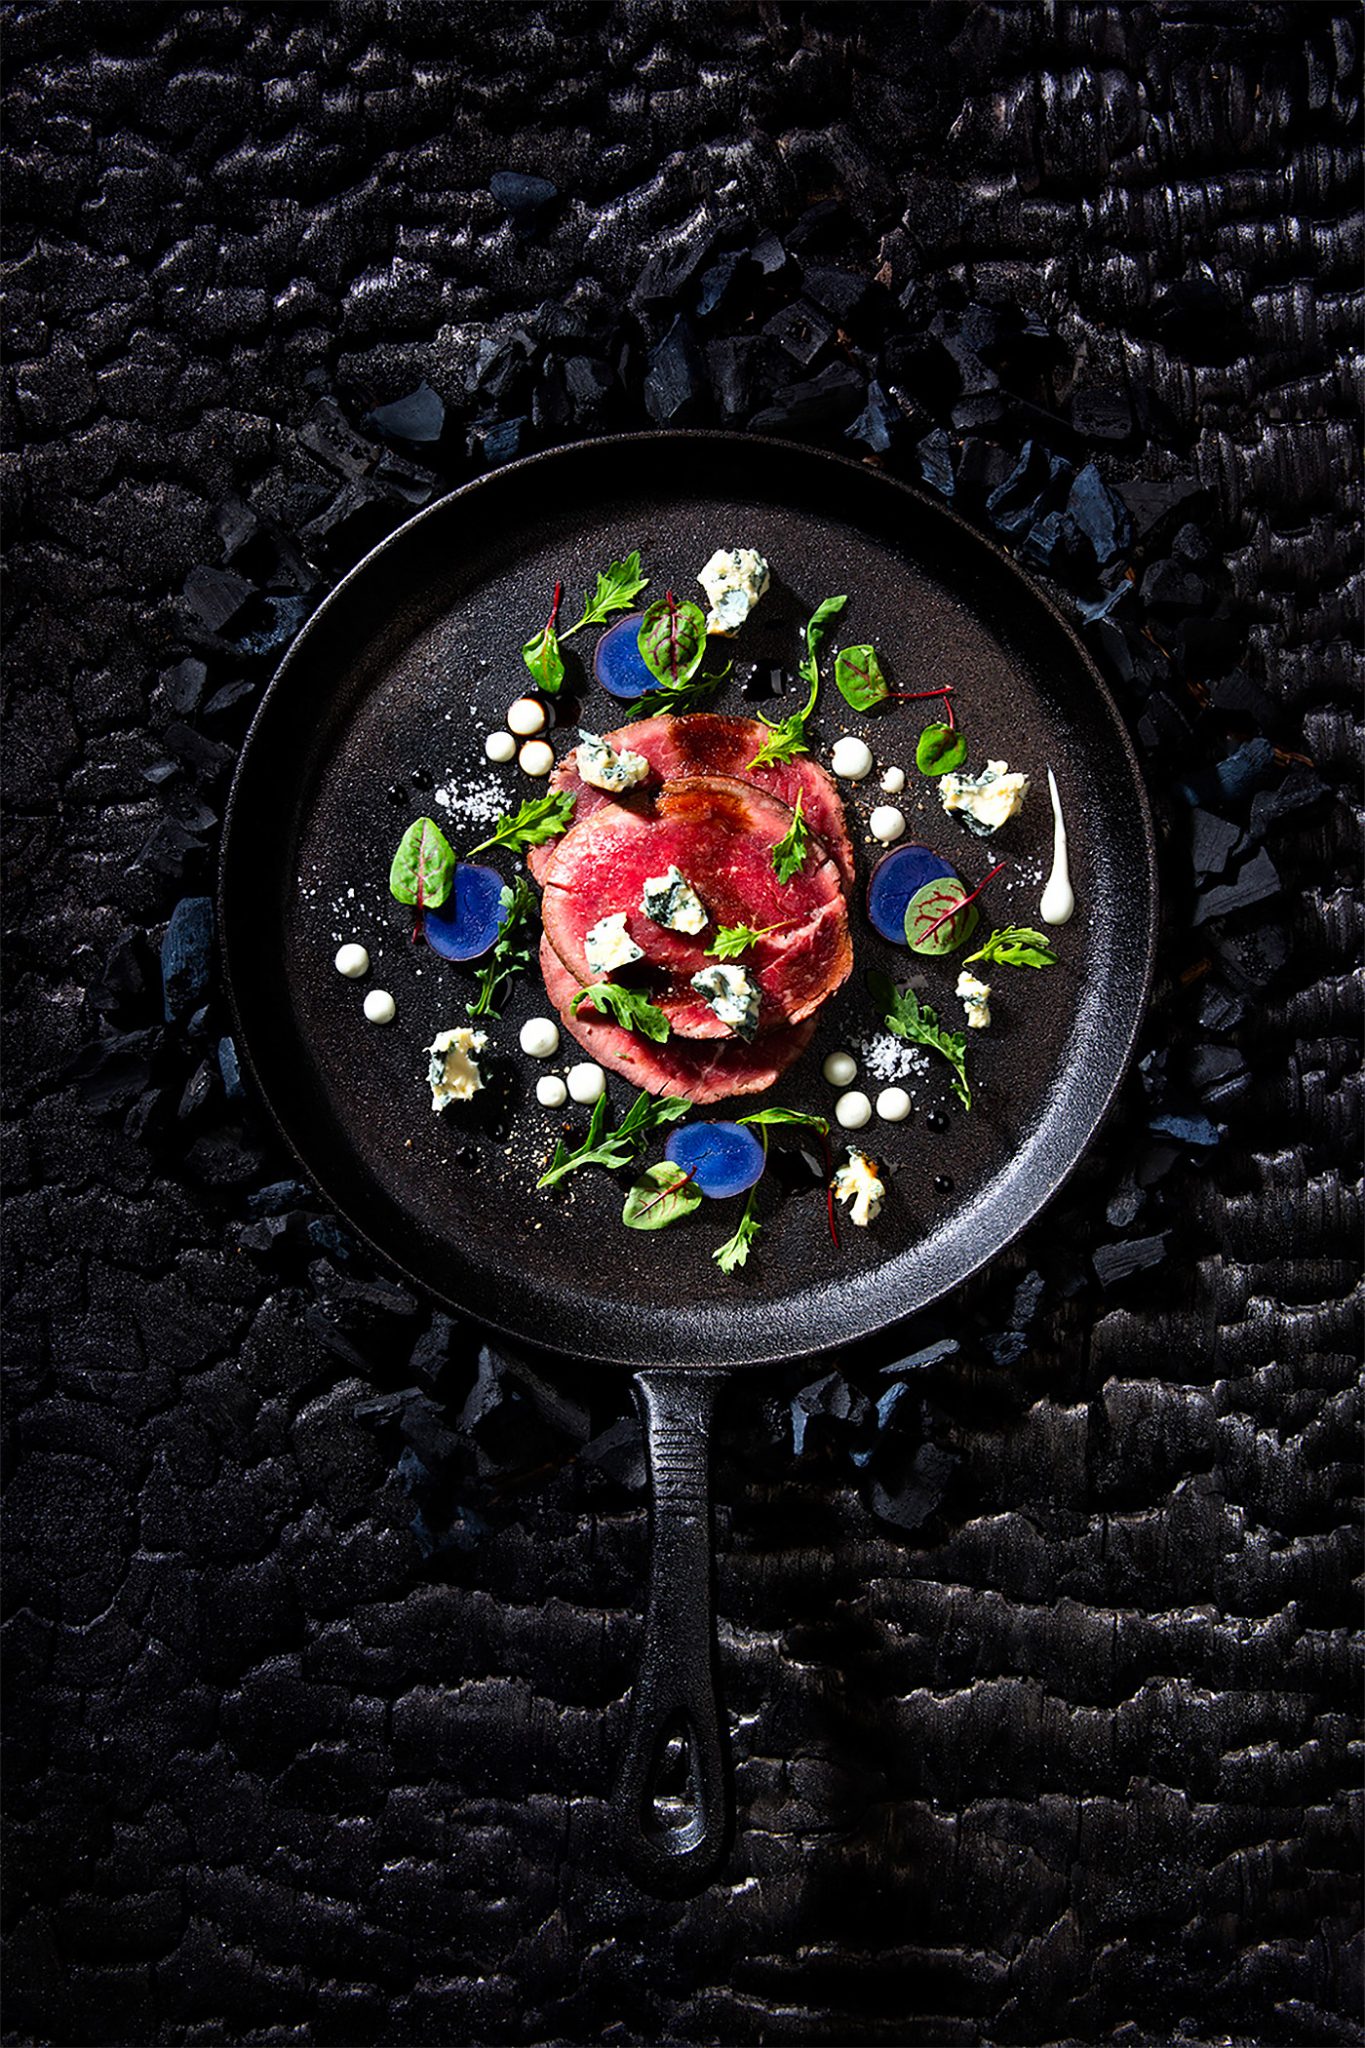 Les Garçons创意美食摄影